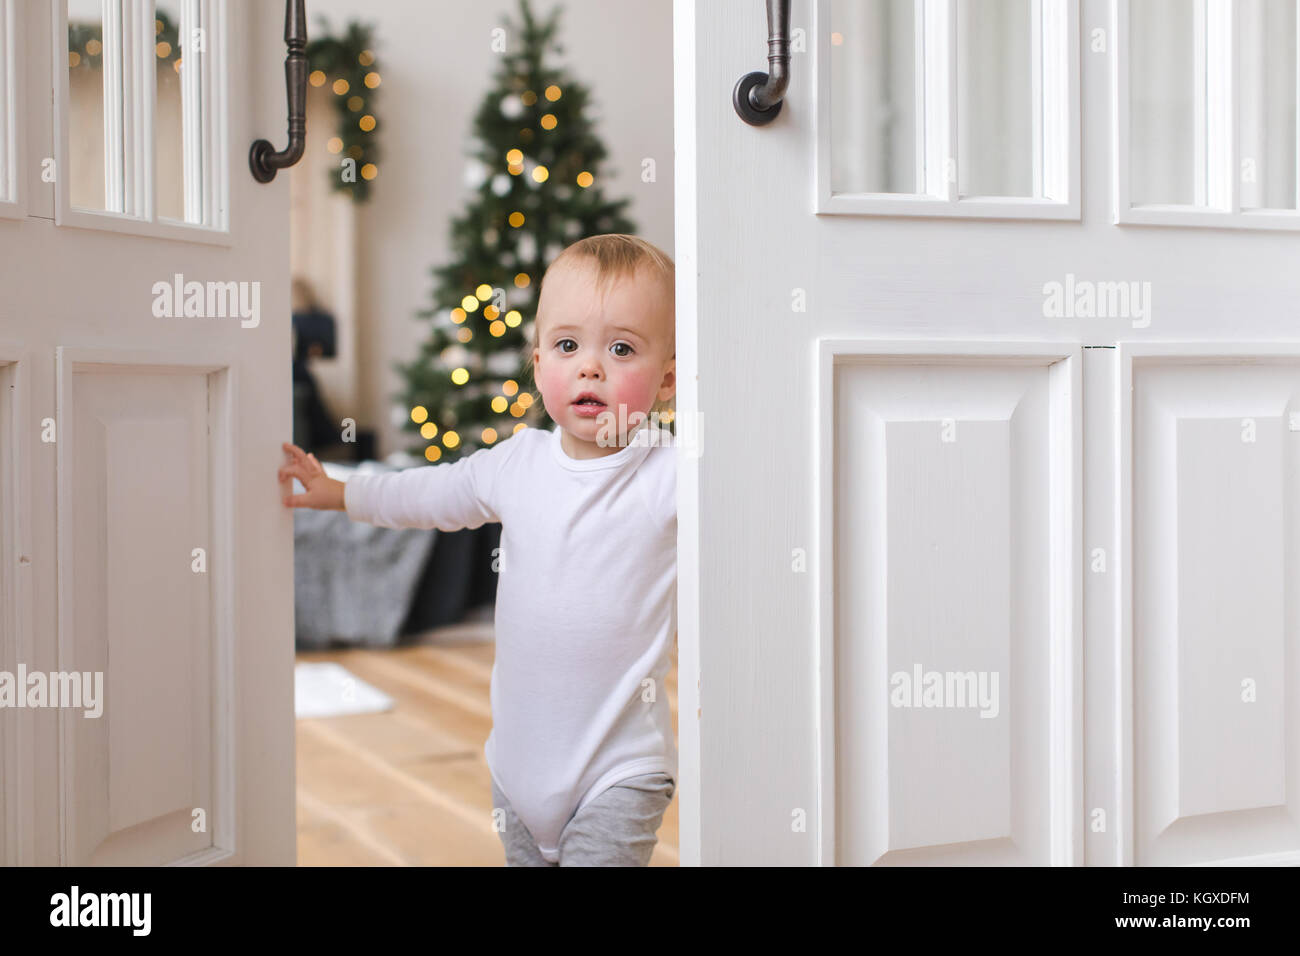 Charming kid in doorway of cozy bedroom Stock Photo